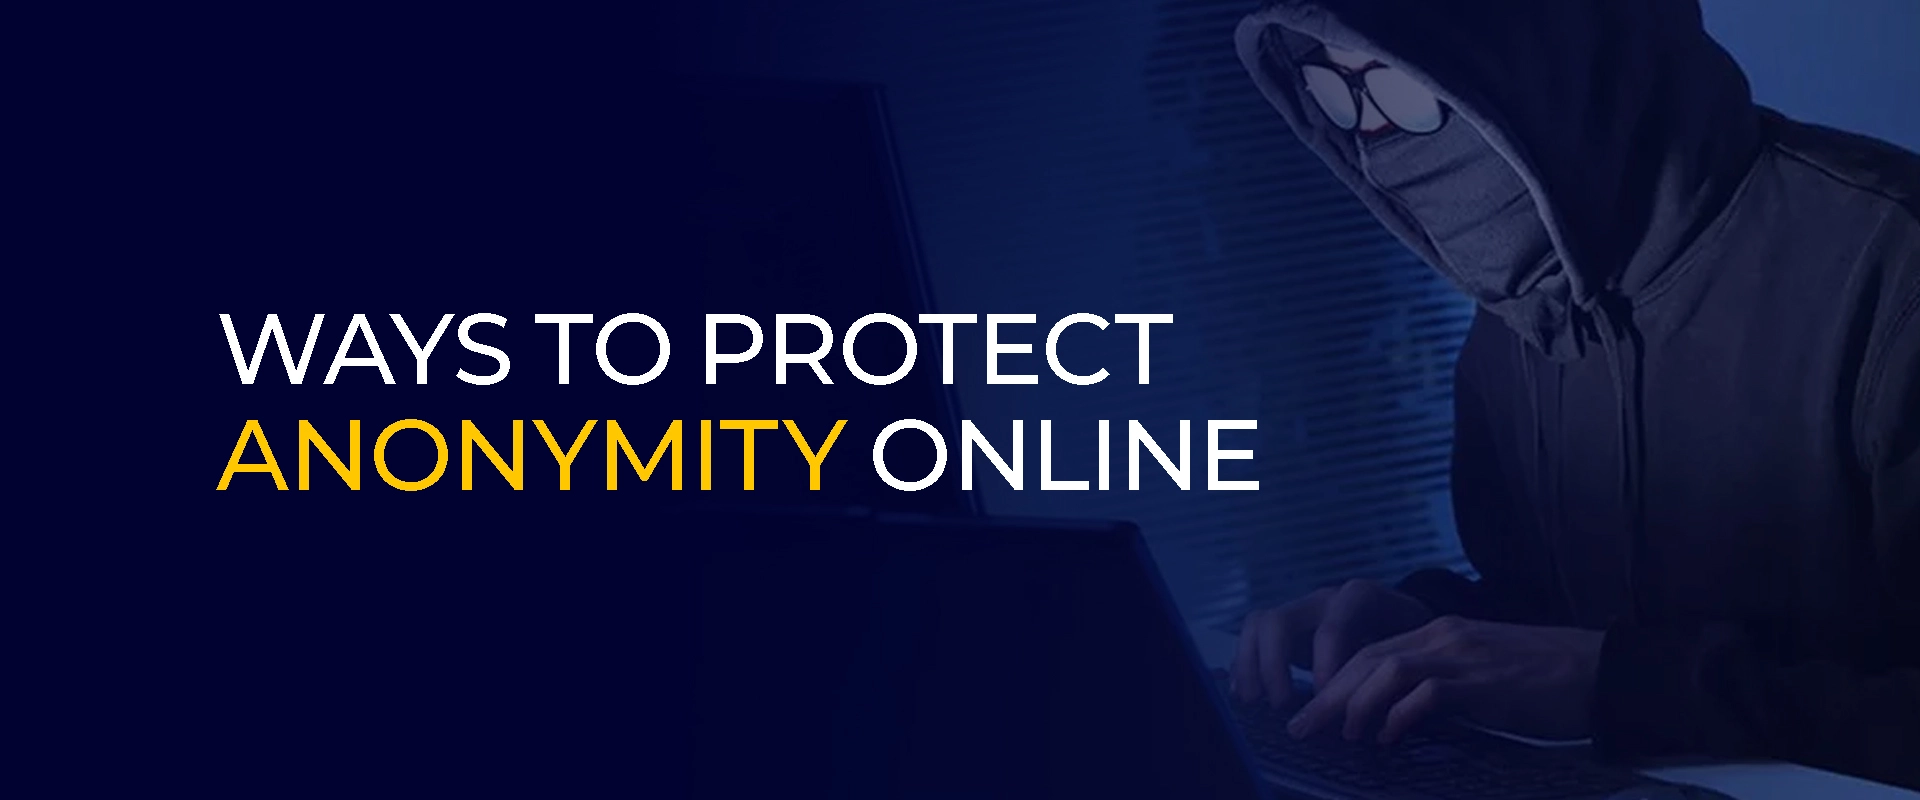 Maneiras de proteger o anonimato online